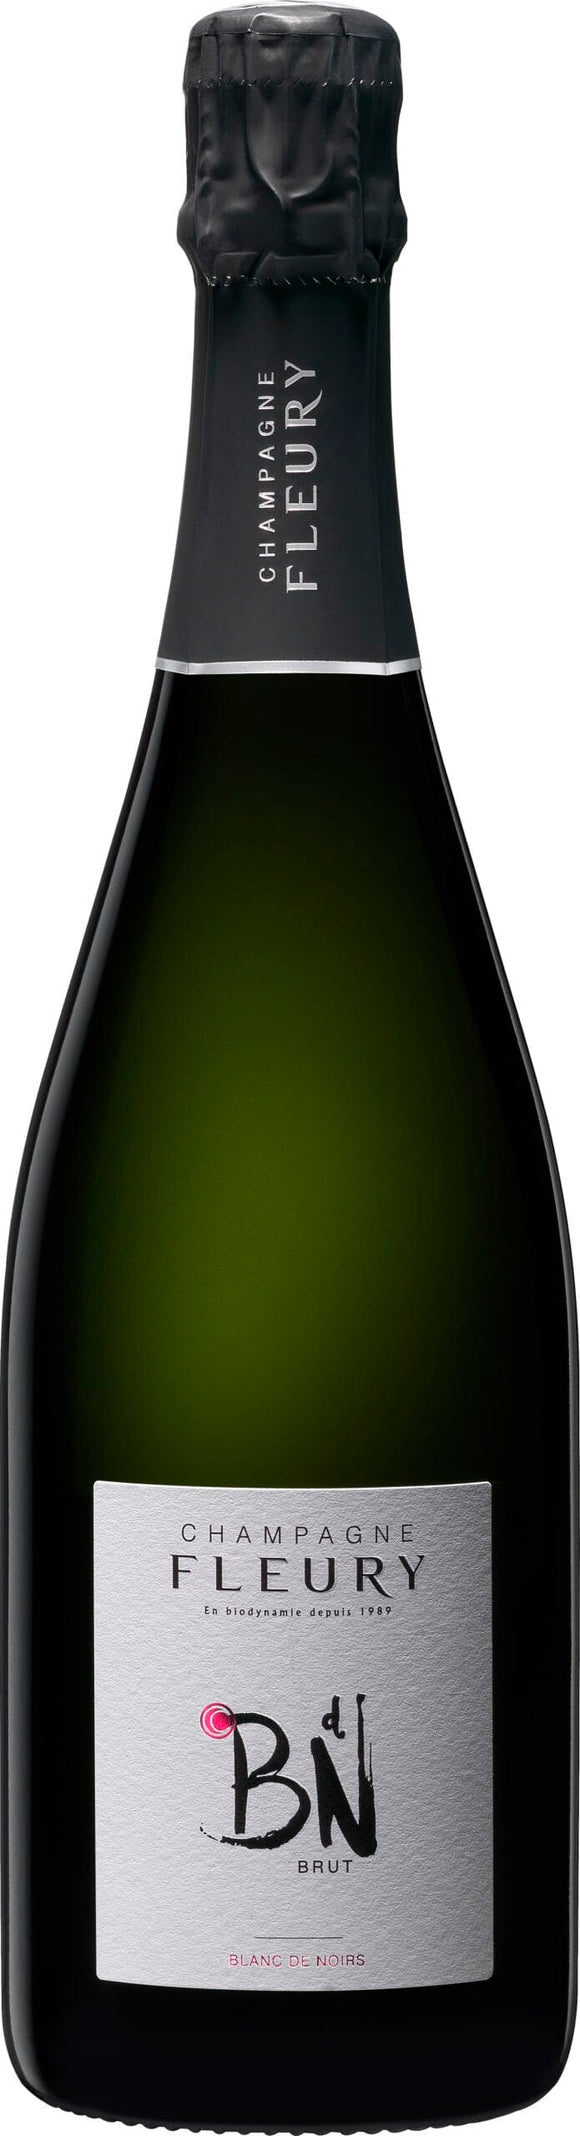 NV Fleury 'Blanc de Noirs' Champagne